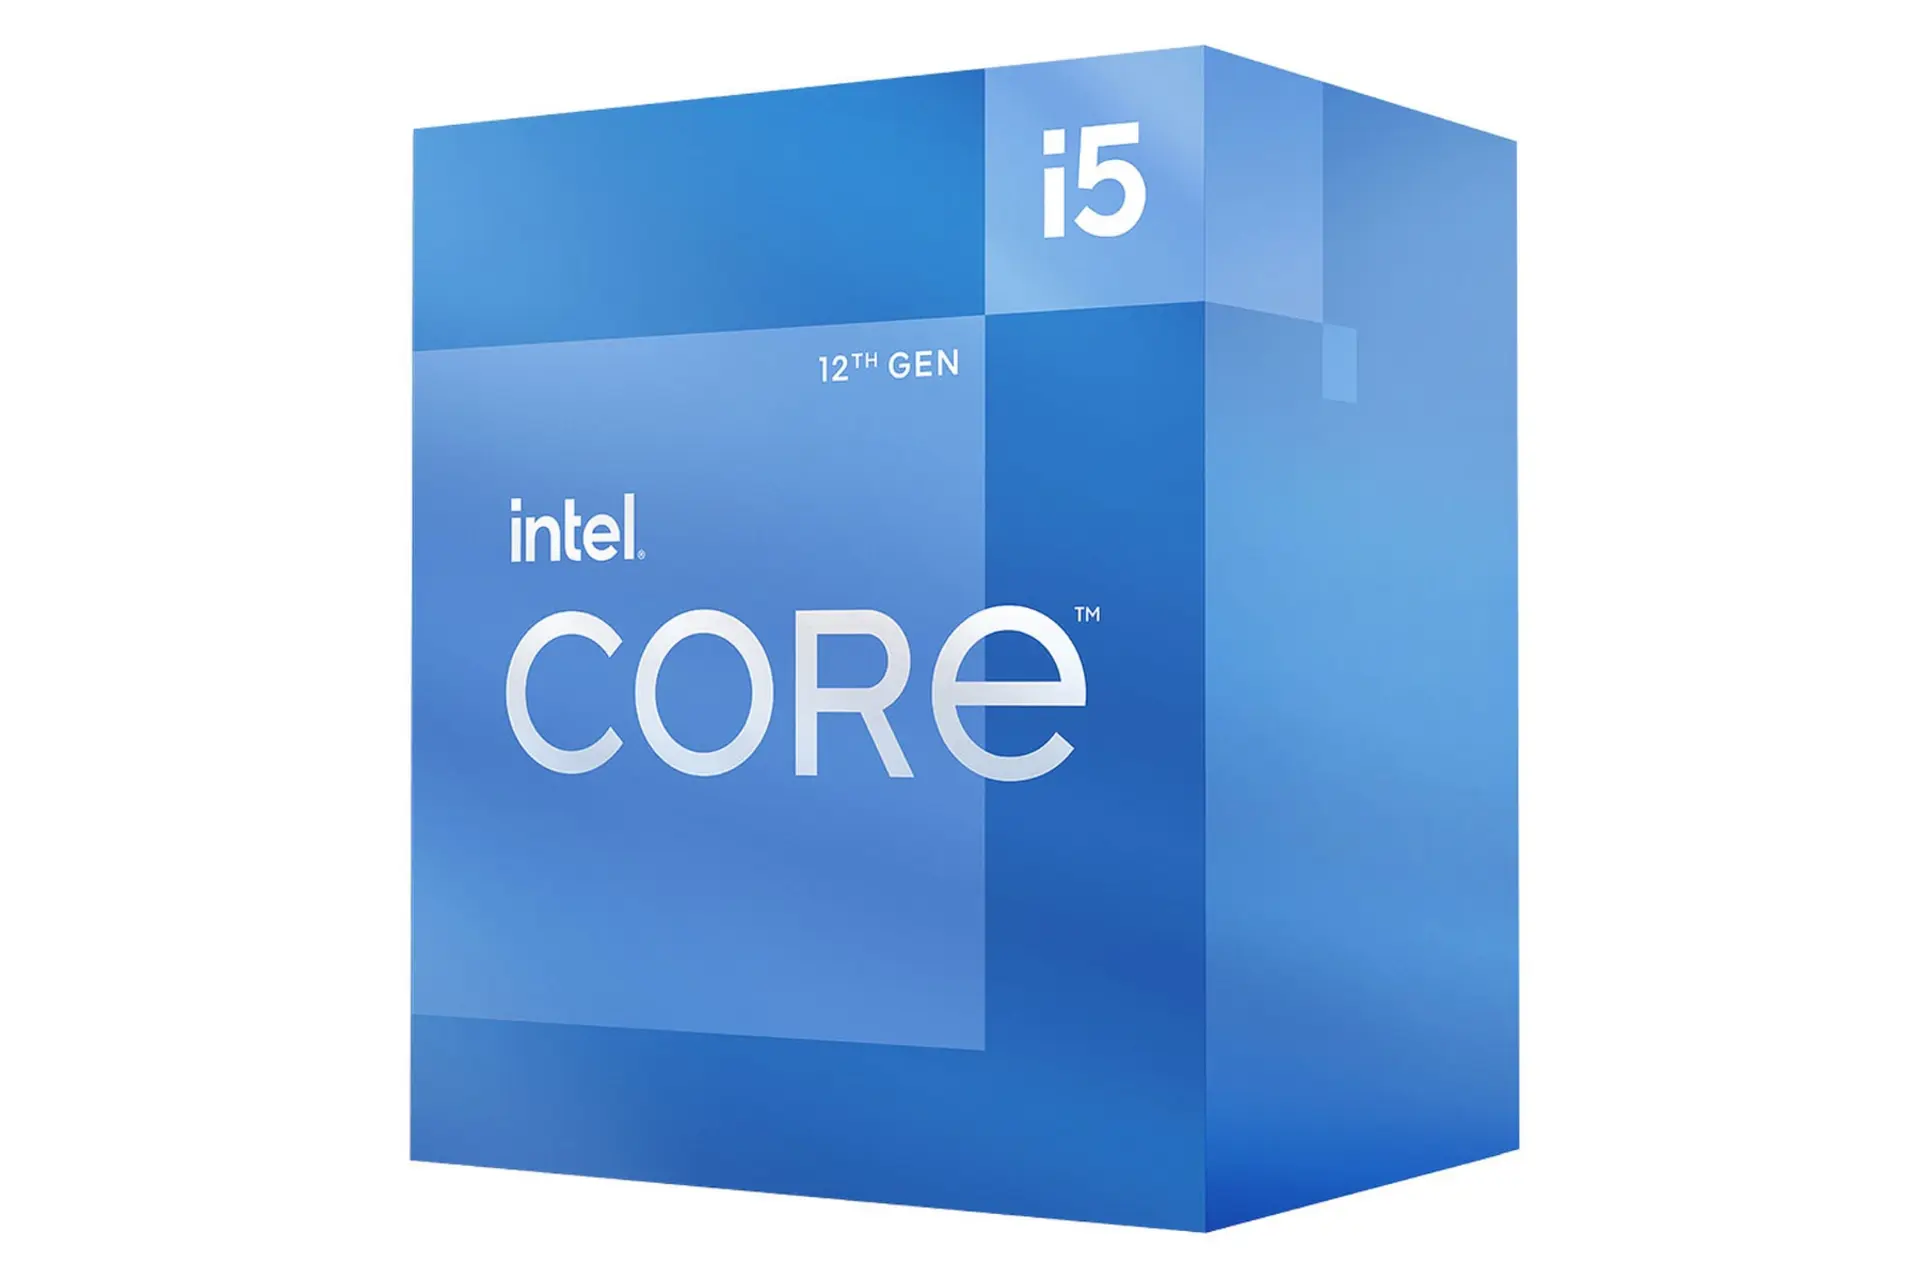 مرجع متخصصين ايران نماي راست جعبه پردازنده اينتل Core i5 نسل دوازدهم / Intel Core i5 12th Gen